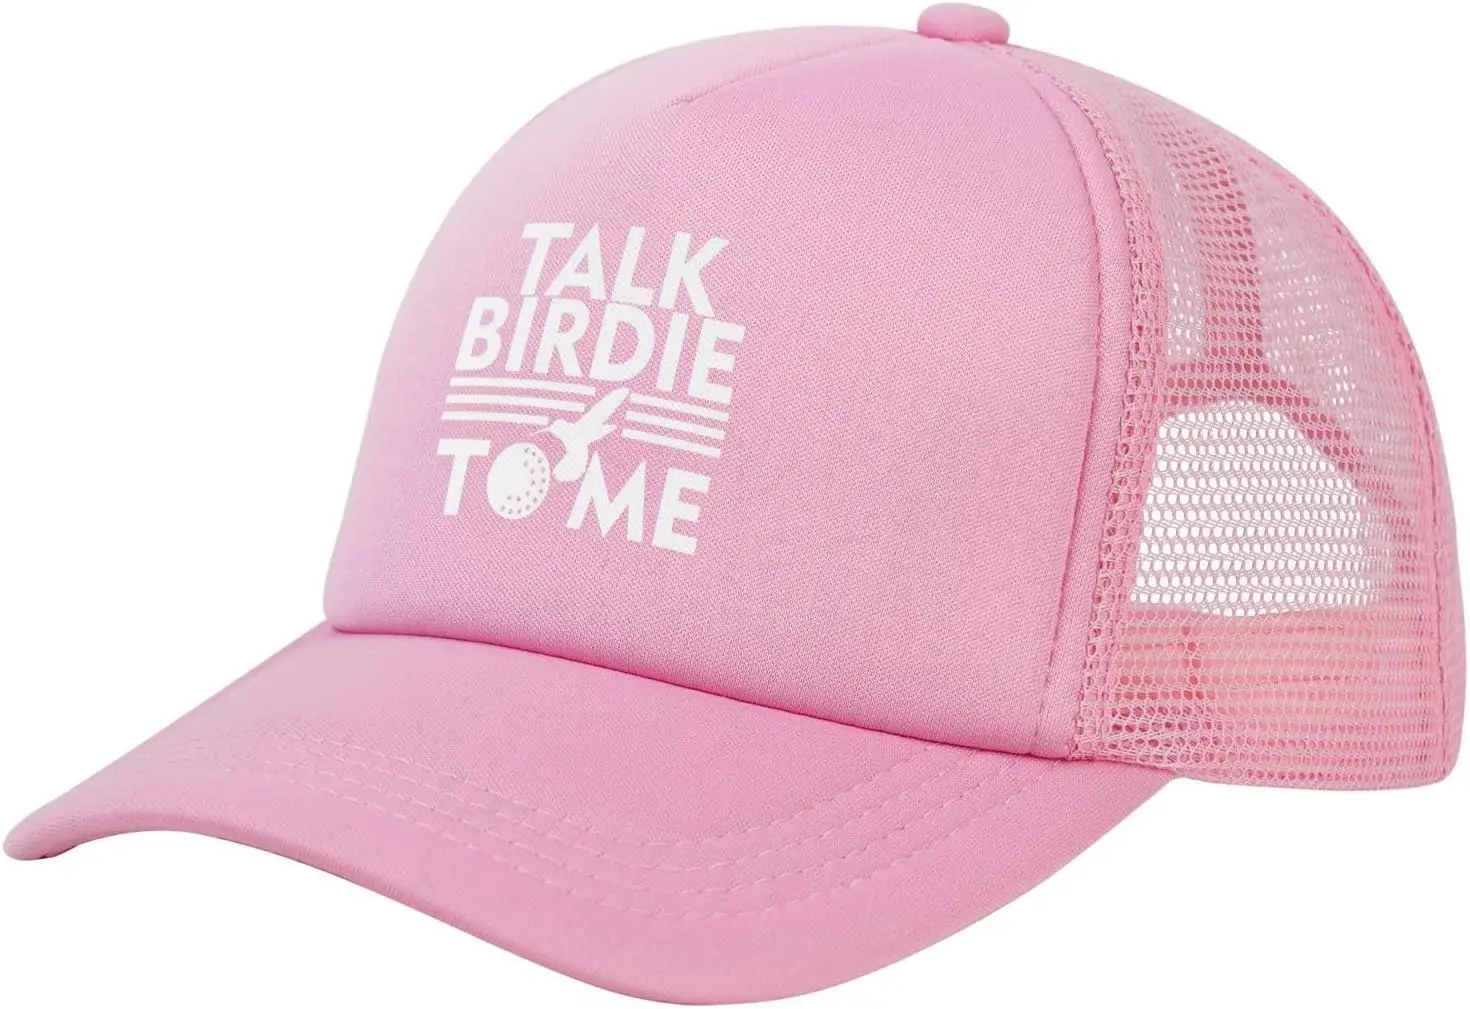 

Бейсболка Talk Birdie to Me с сеткой, розовая Кепка-тракер, регулируемая летняя бейсболка с изогнутыми полями